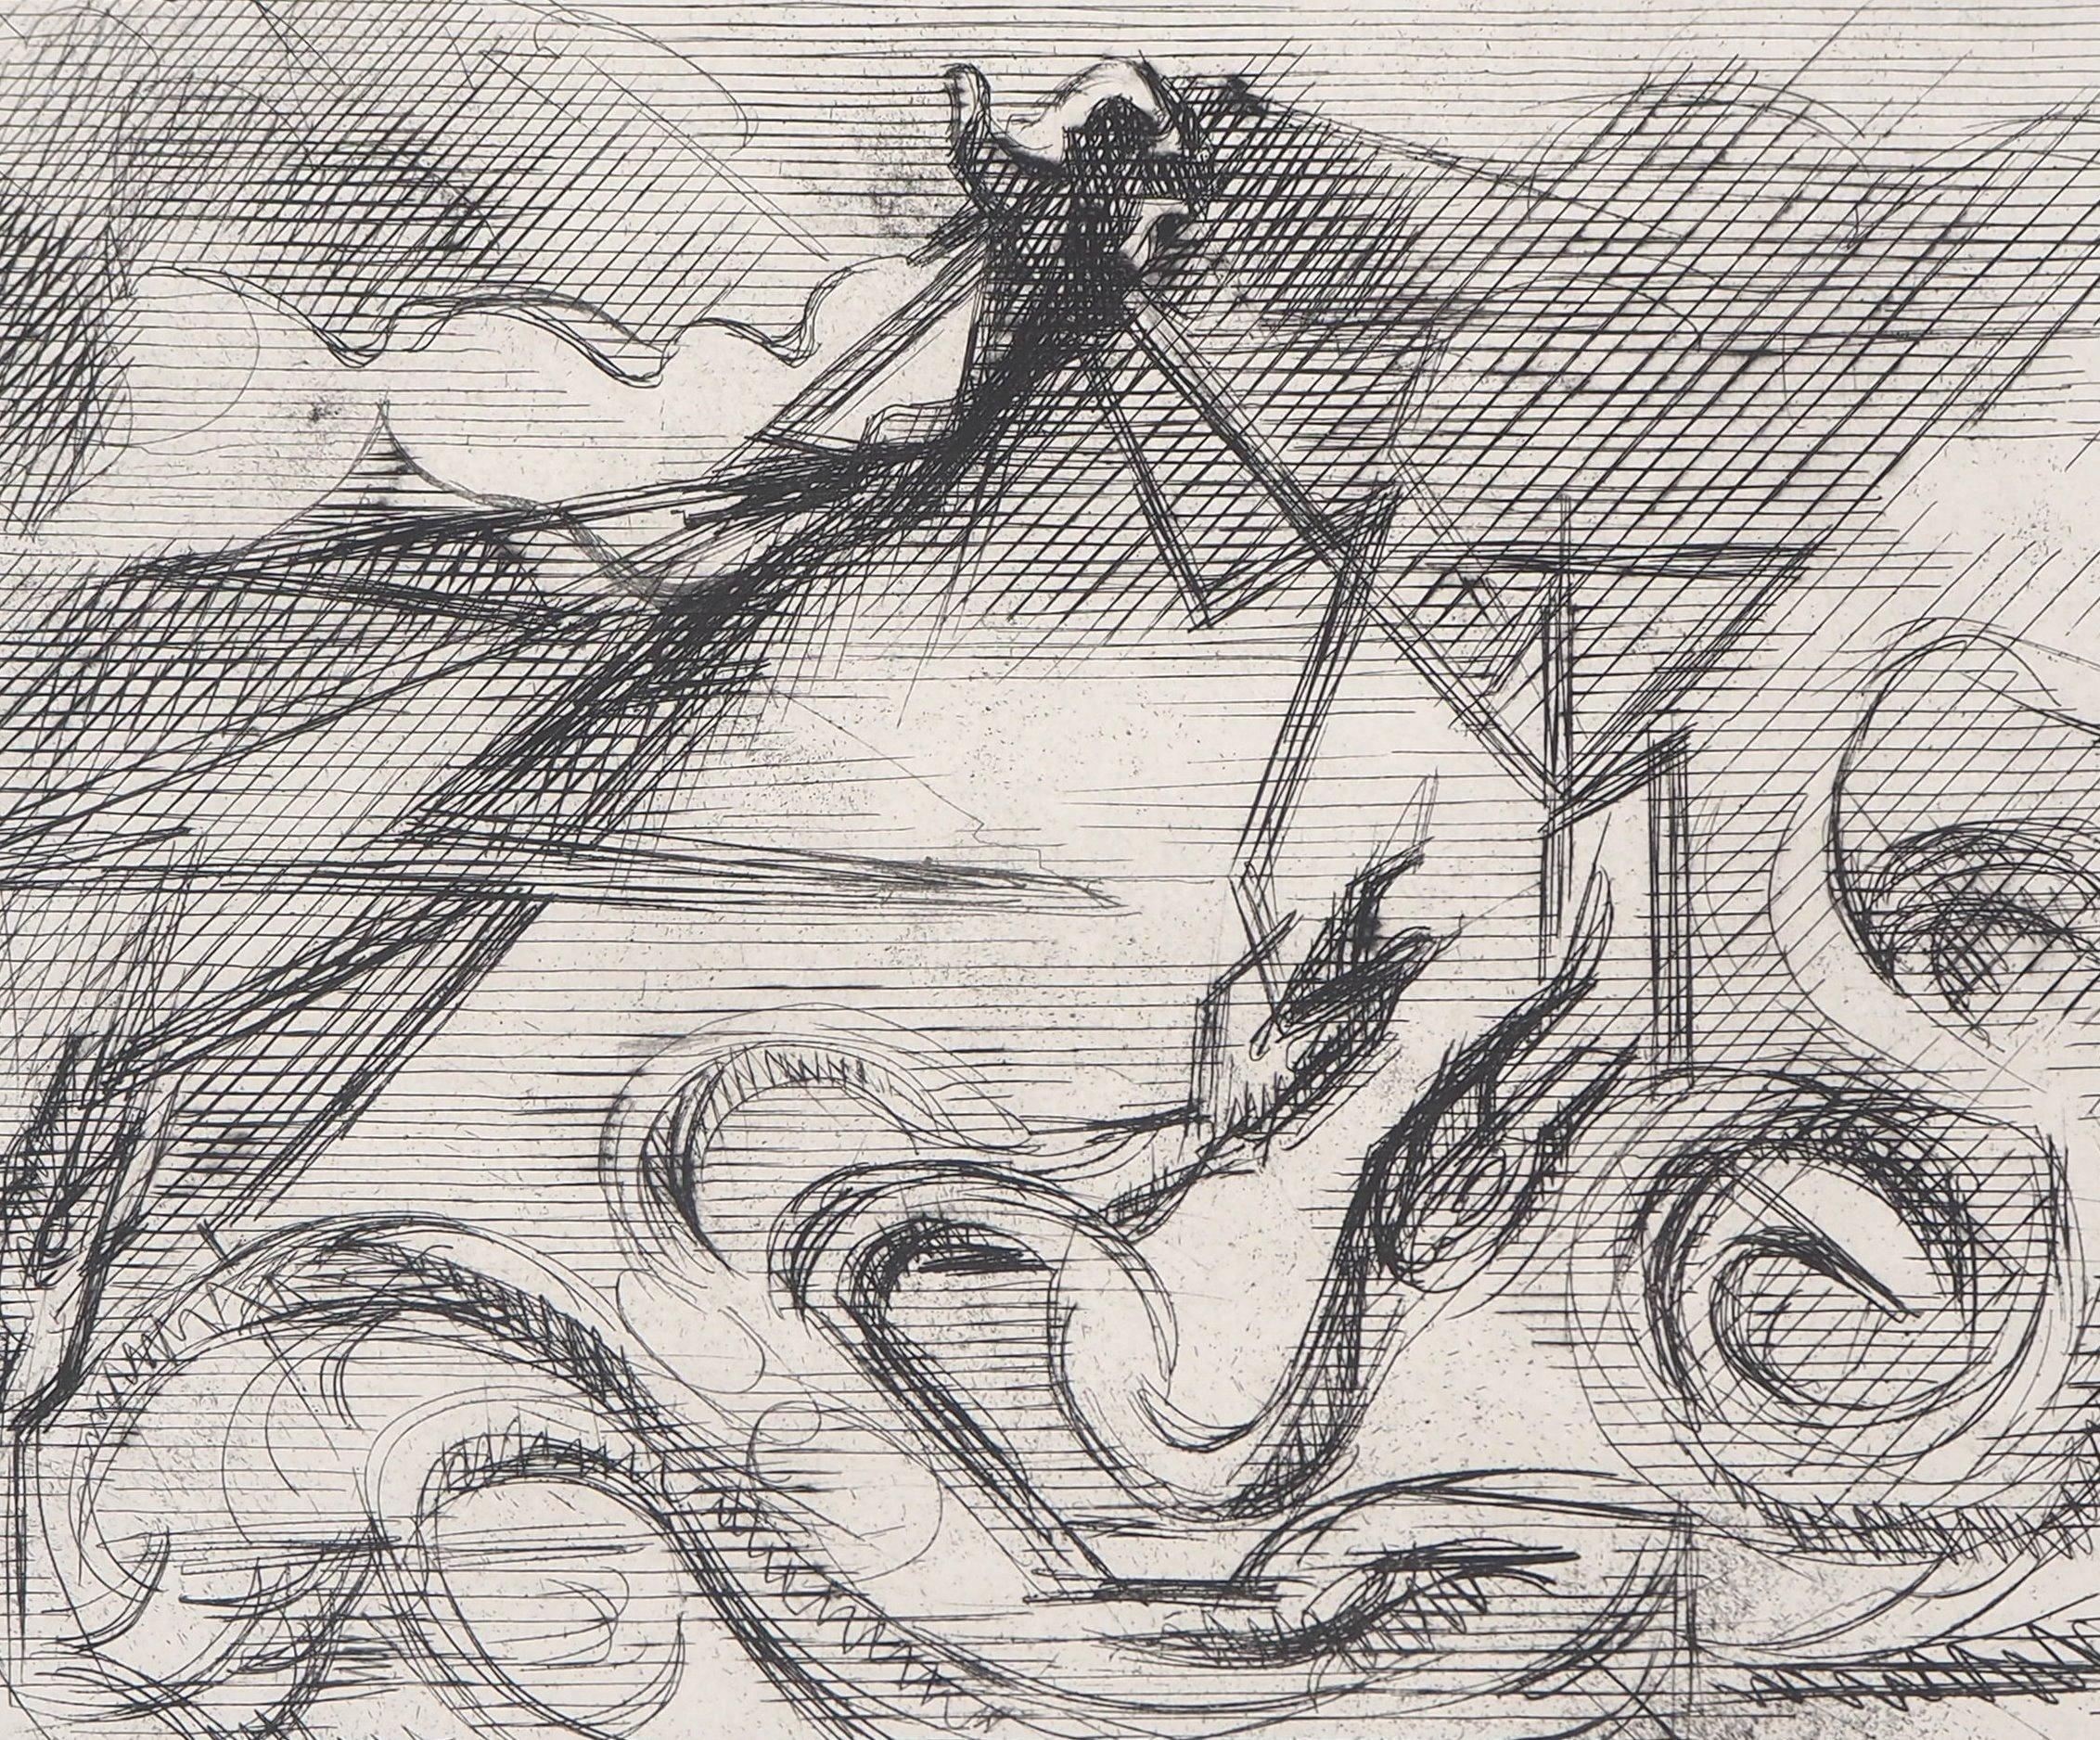 Jacques Villon
Surrealistischer Berg, 1946

Original-Radierung
Gedruckte Unterschrift auf der Platte
Auf BFK Rives Pergament, 25 x 32,5 cm (ca. 9,8 x 12,7 inch)
Auflage limitiert auf 300 Exemplare (nicht nummerierte Exemplare)

INFORMATION : Diese